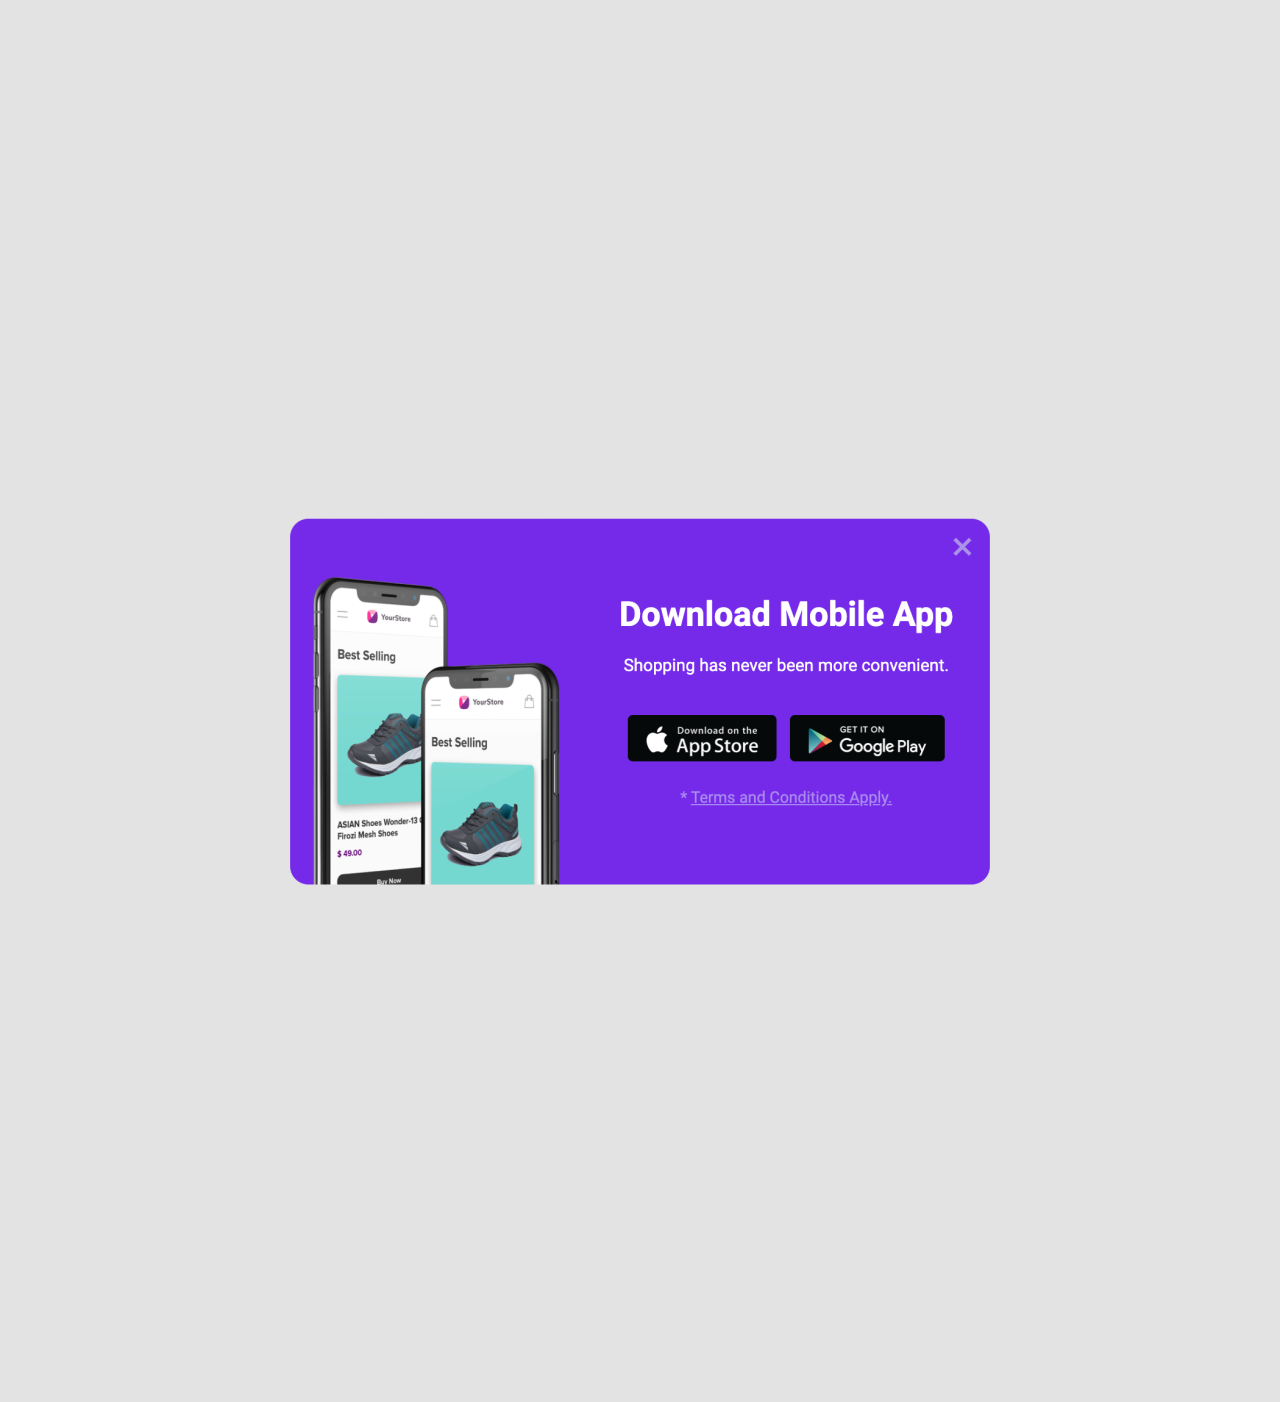 Promocja aplikacji mobilnej szablon - stworzony przez MailerLite